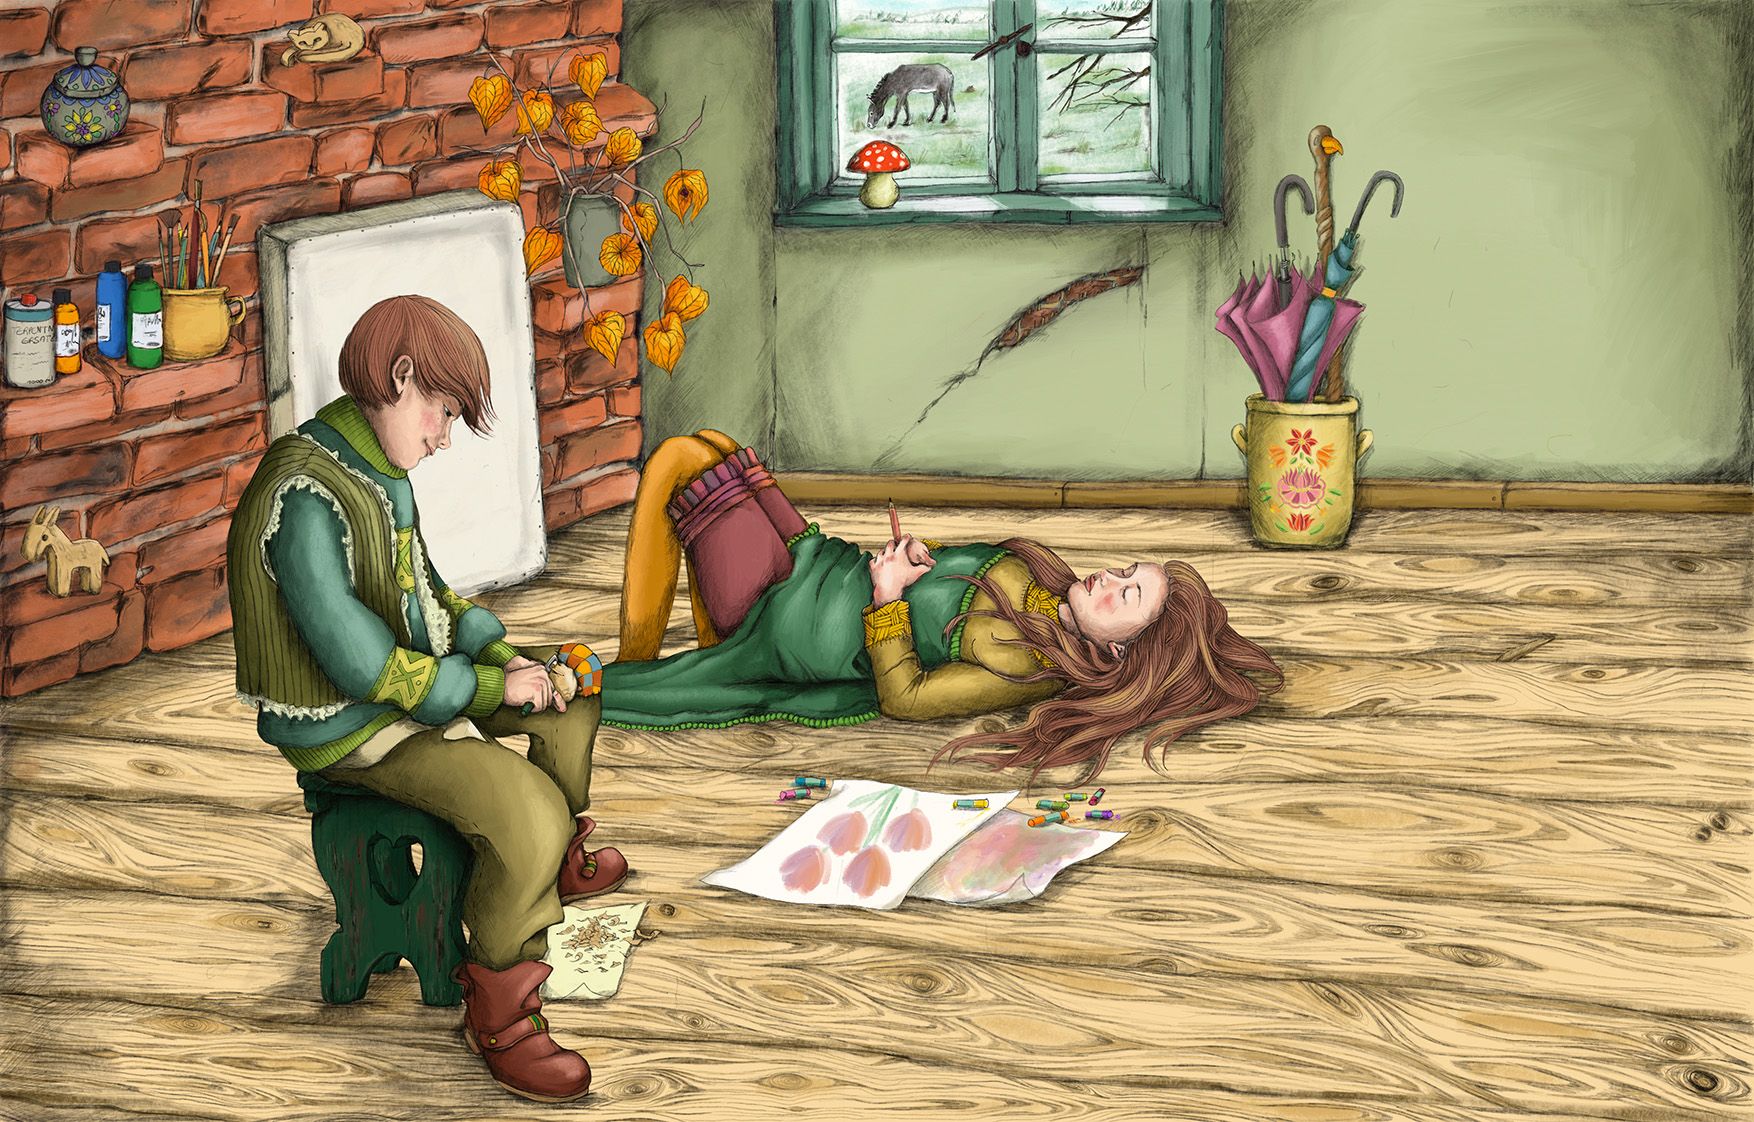 Atelier im altem Haus mit einem schnitzenden Jungen und einem schlafenden Mädchen. Auf dem Boden liegen Bilder, aus dem Fenster sieht man einen Esel